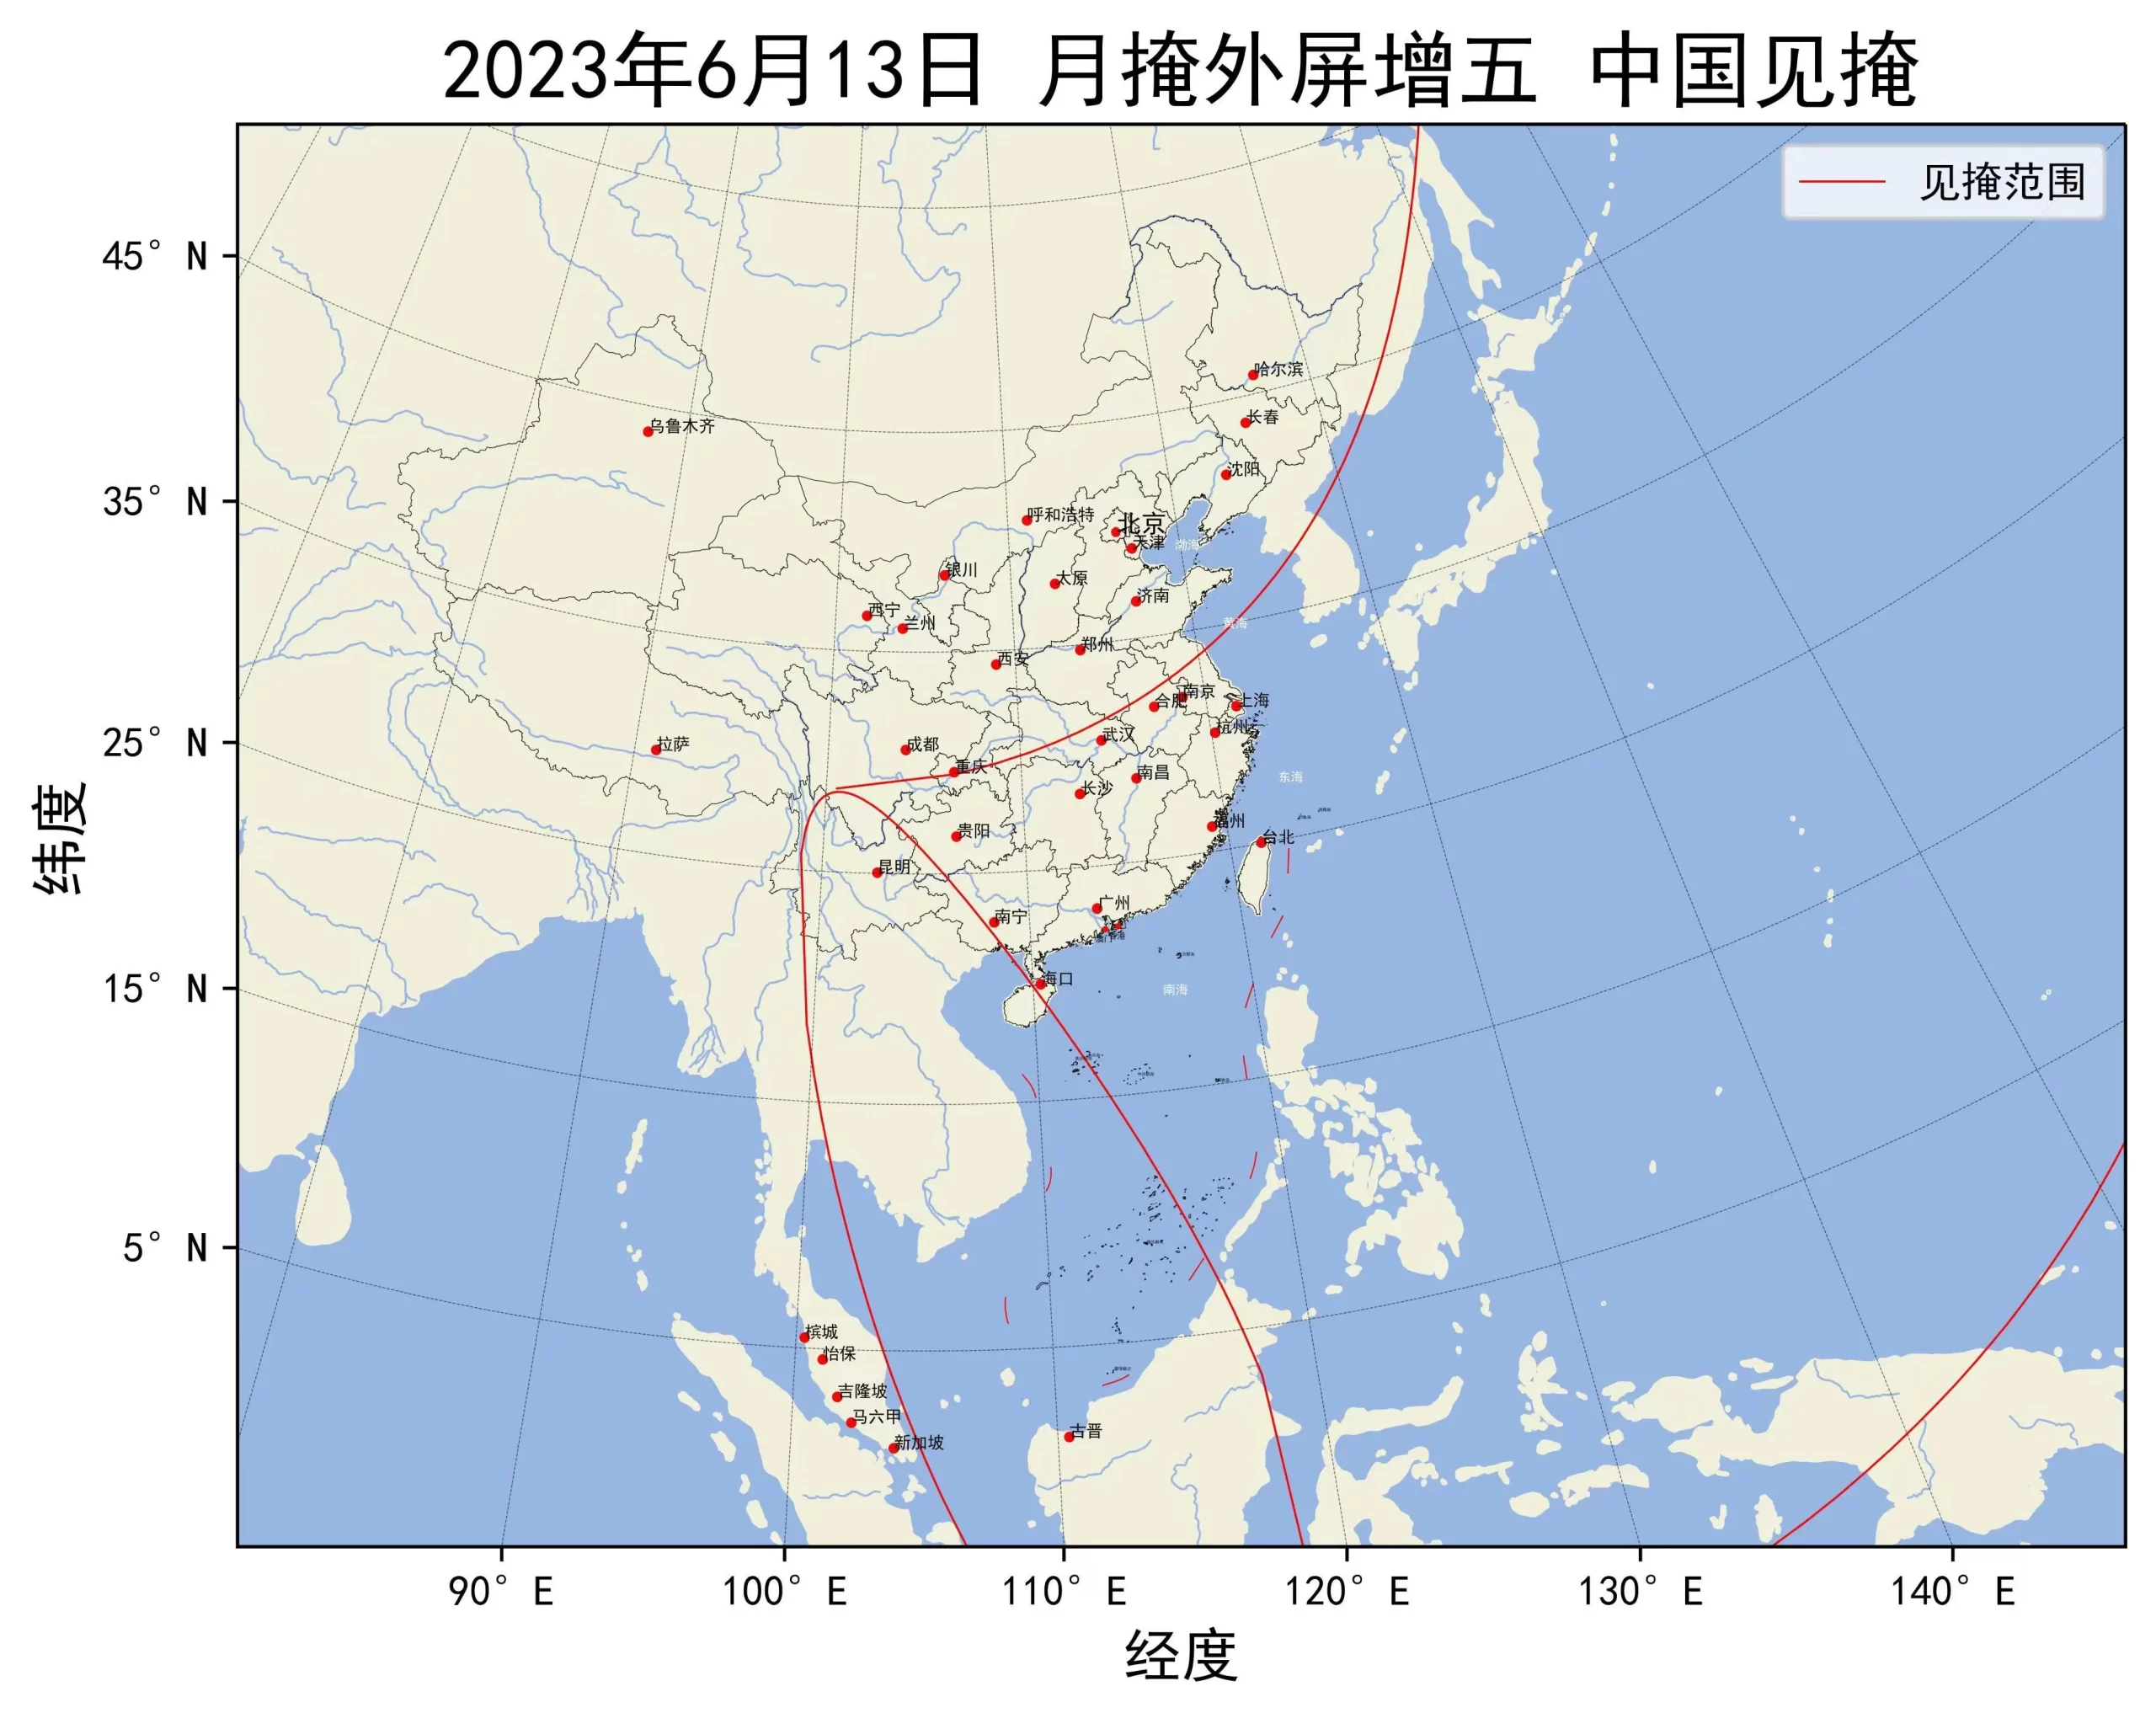 2023年6月13日月掩外屏增五中国见掩